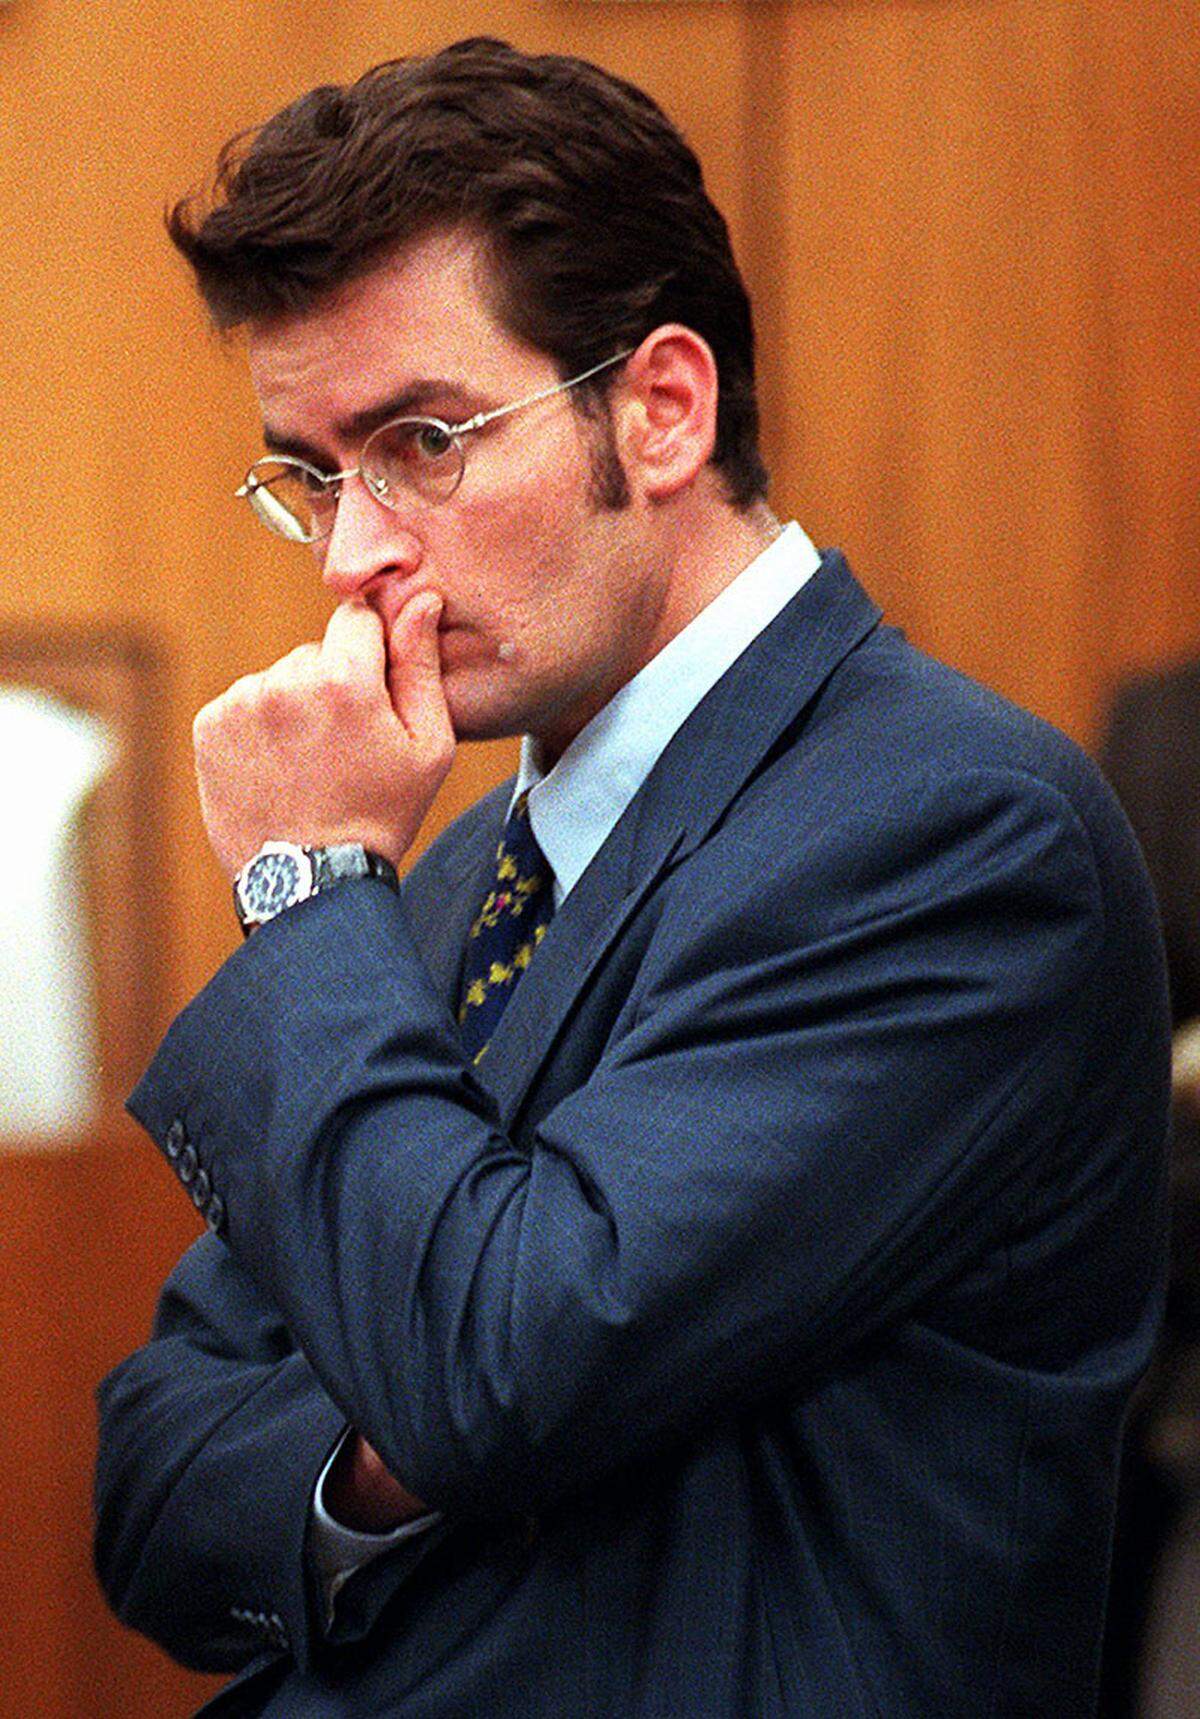 Großes öffentliches Interesse fanden Sheens Beziehungen mit den Pornodarstellerinnen Ginger Lynn und Brittany Ashland in den 90ern. Nachdem er Ashland 1996 bewusstlos geschlagen hatten, wurde er vom Gericht zu einer Bewährungsstrafe und Sozialstunden verurteilt.